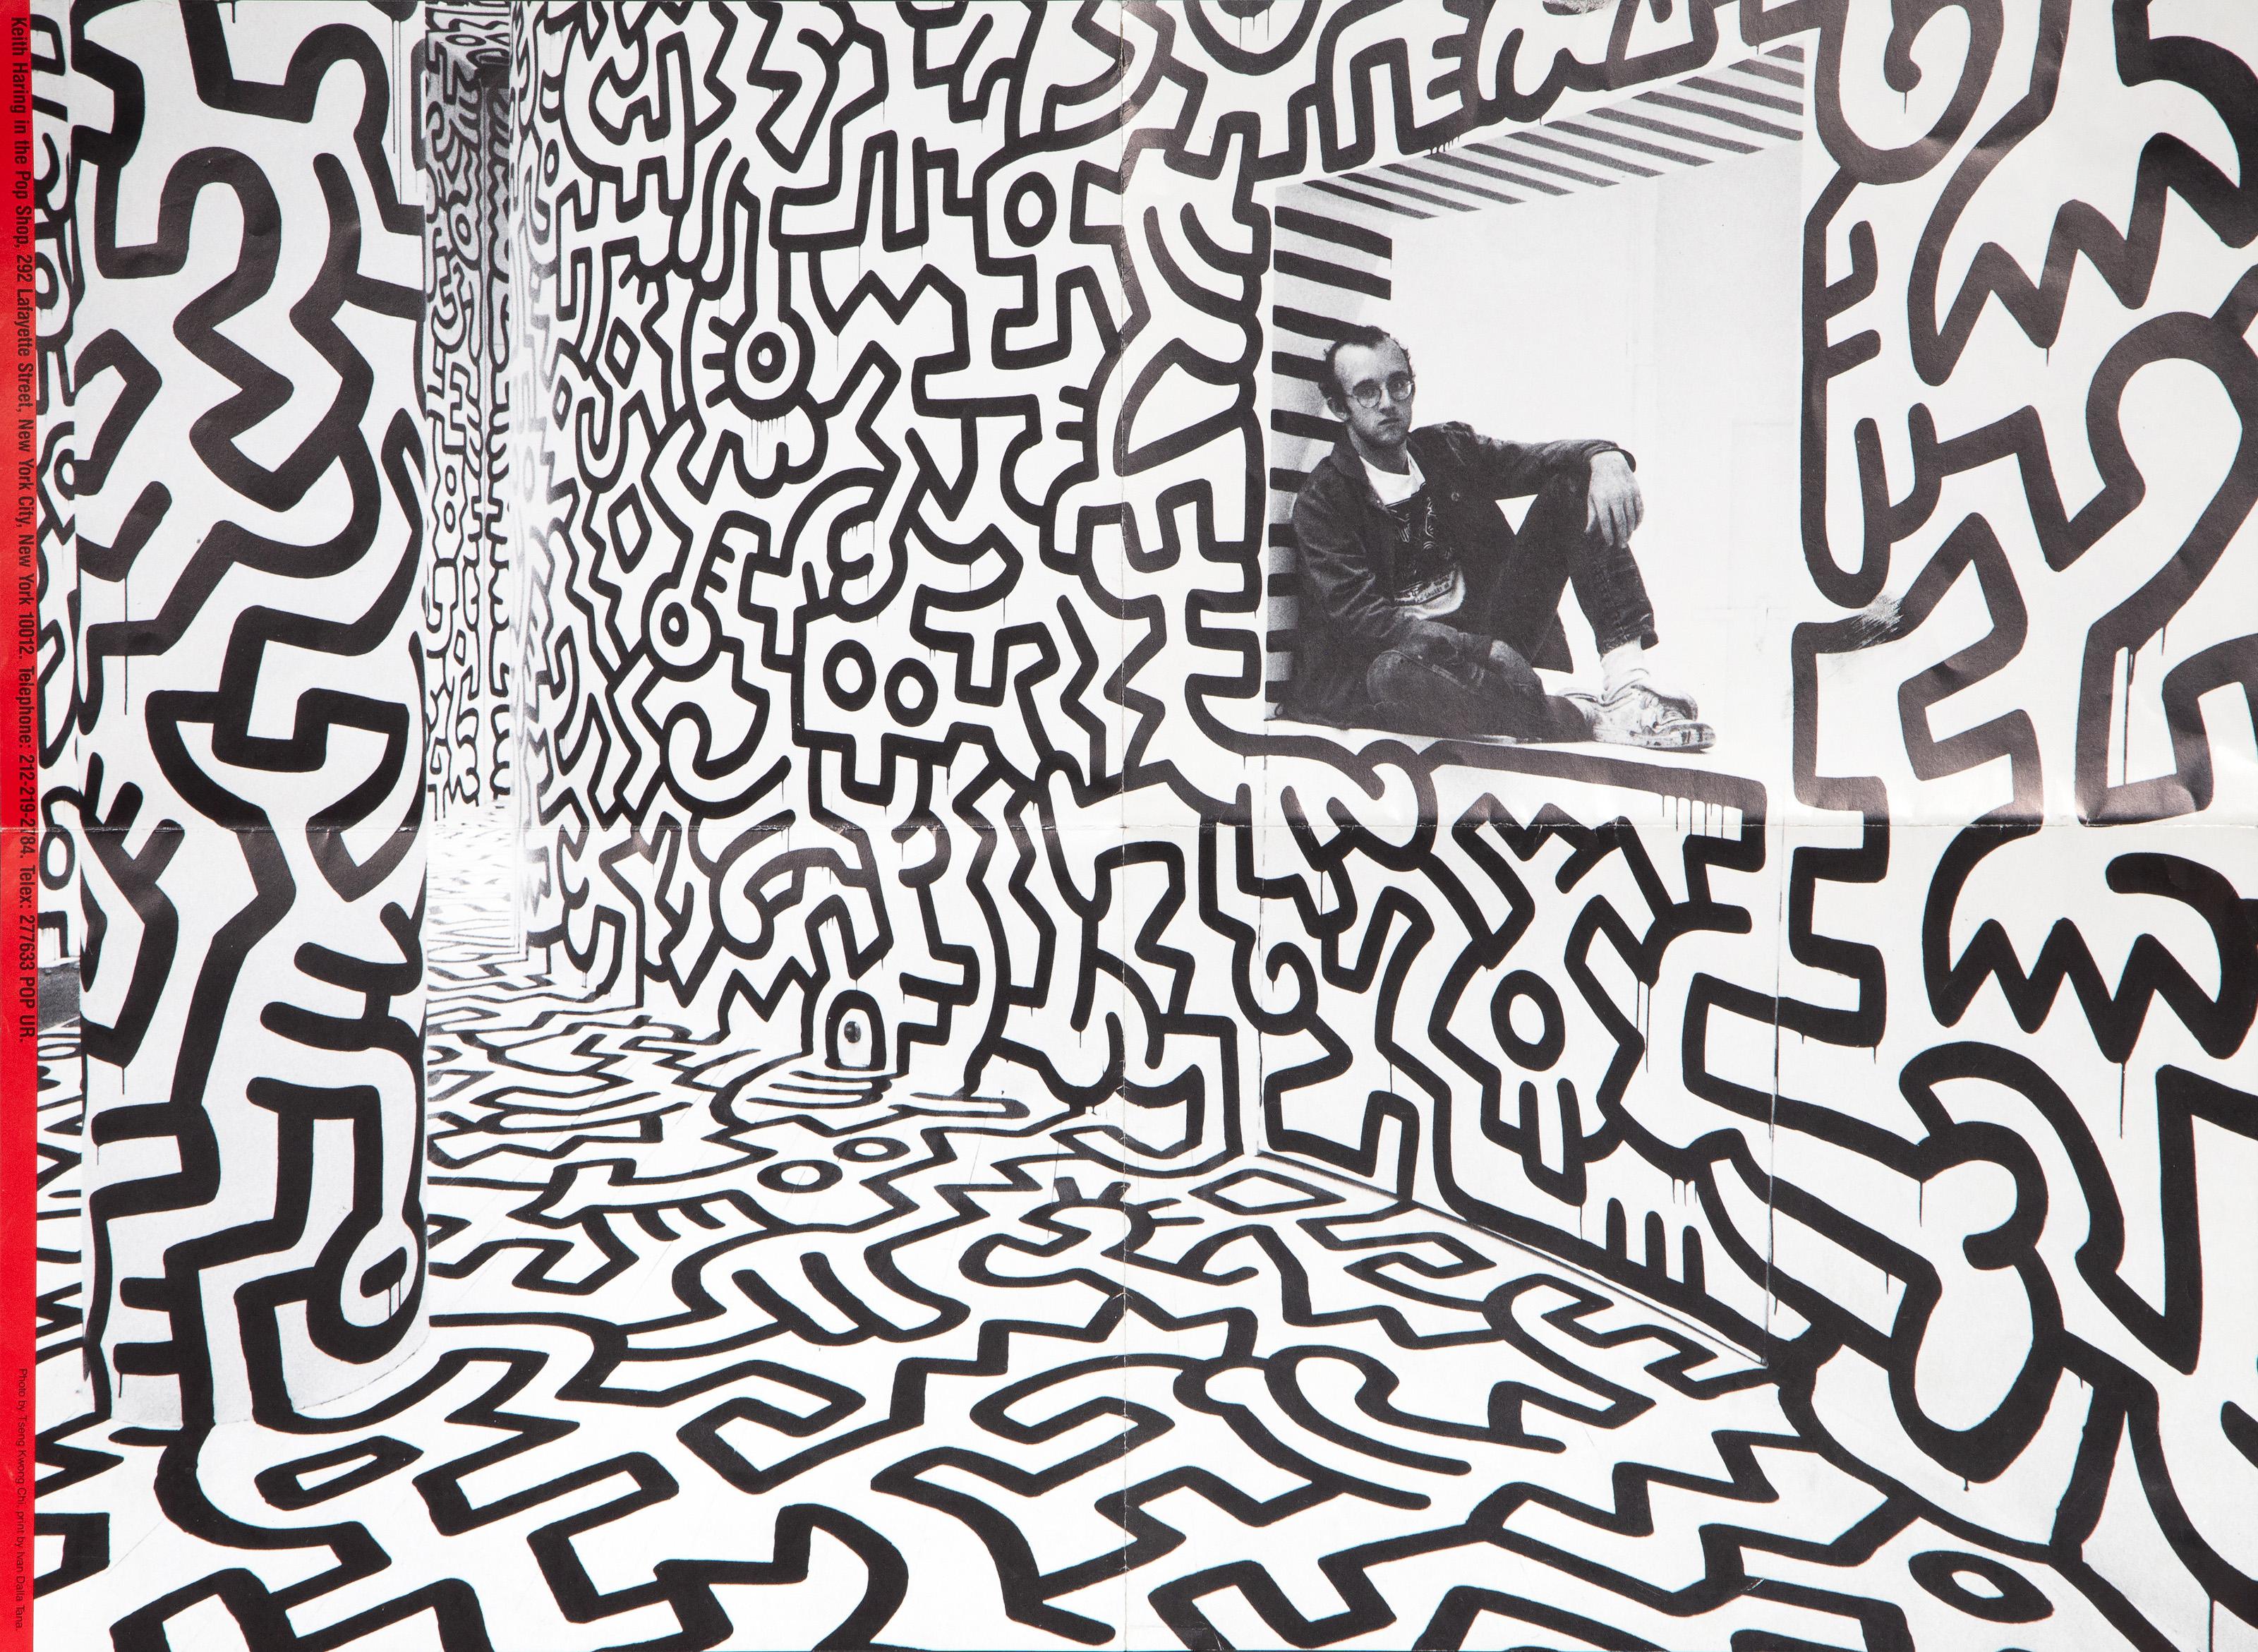 Dieses Plakat zeigt den amerikanischen Pop-Art-Künstler Keith Haring, der im Kassenfenster seines Pop-up-Ladens sitzt, einem Raum, der von der Decke bis zum Boden mit schwarzen Strichzeichnungen im Stil von Haring bedeckt ist. Auf der Rückseite